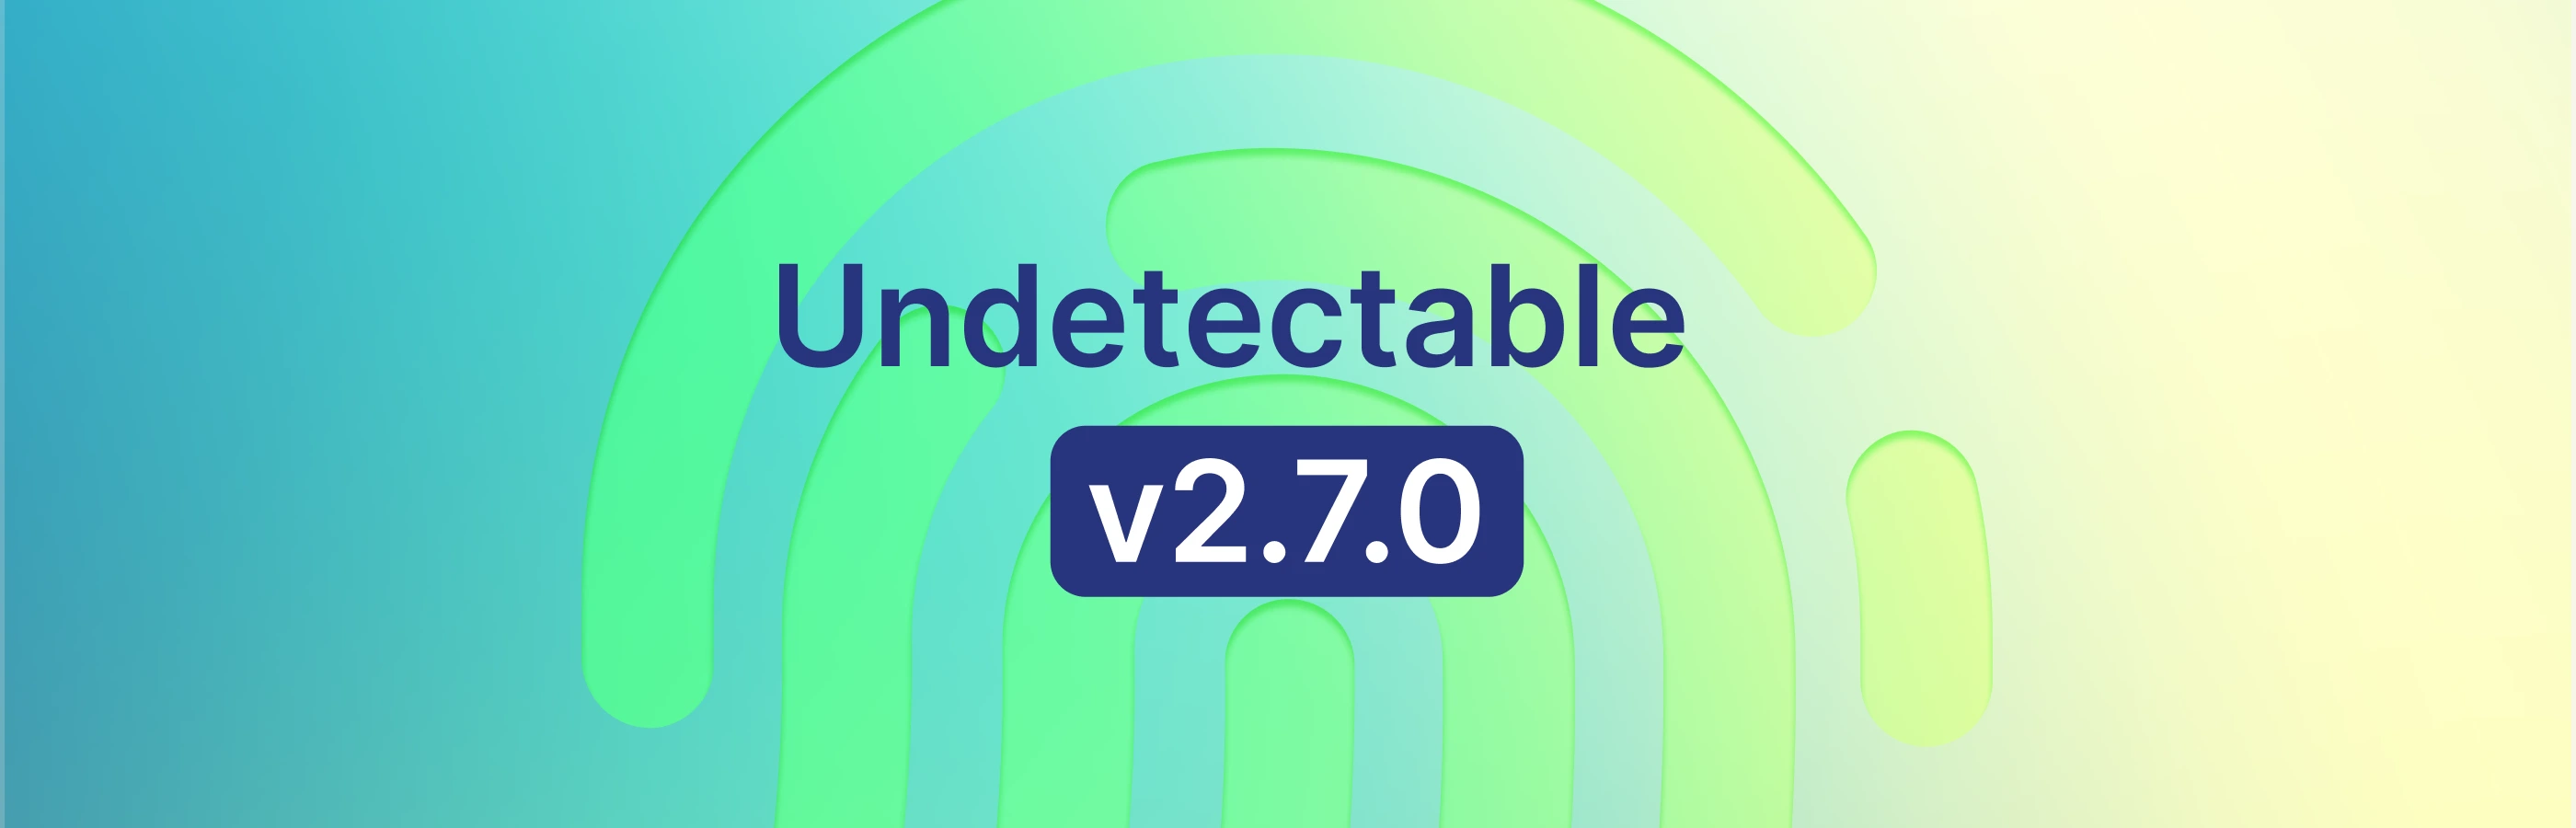 Atualização Undetectable 2.7.0: impressões digitais aprimoradas e novas funcionalidades de API